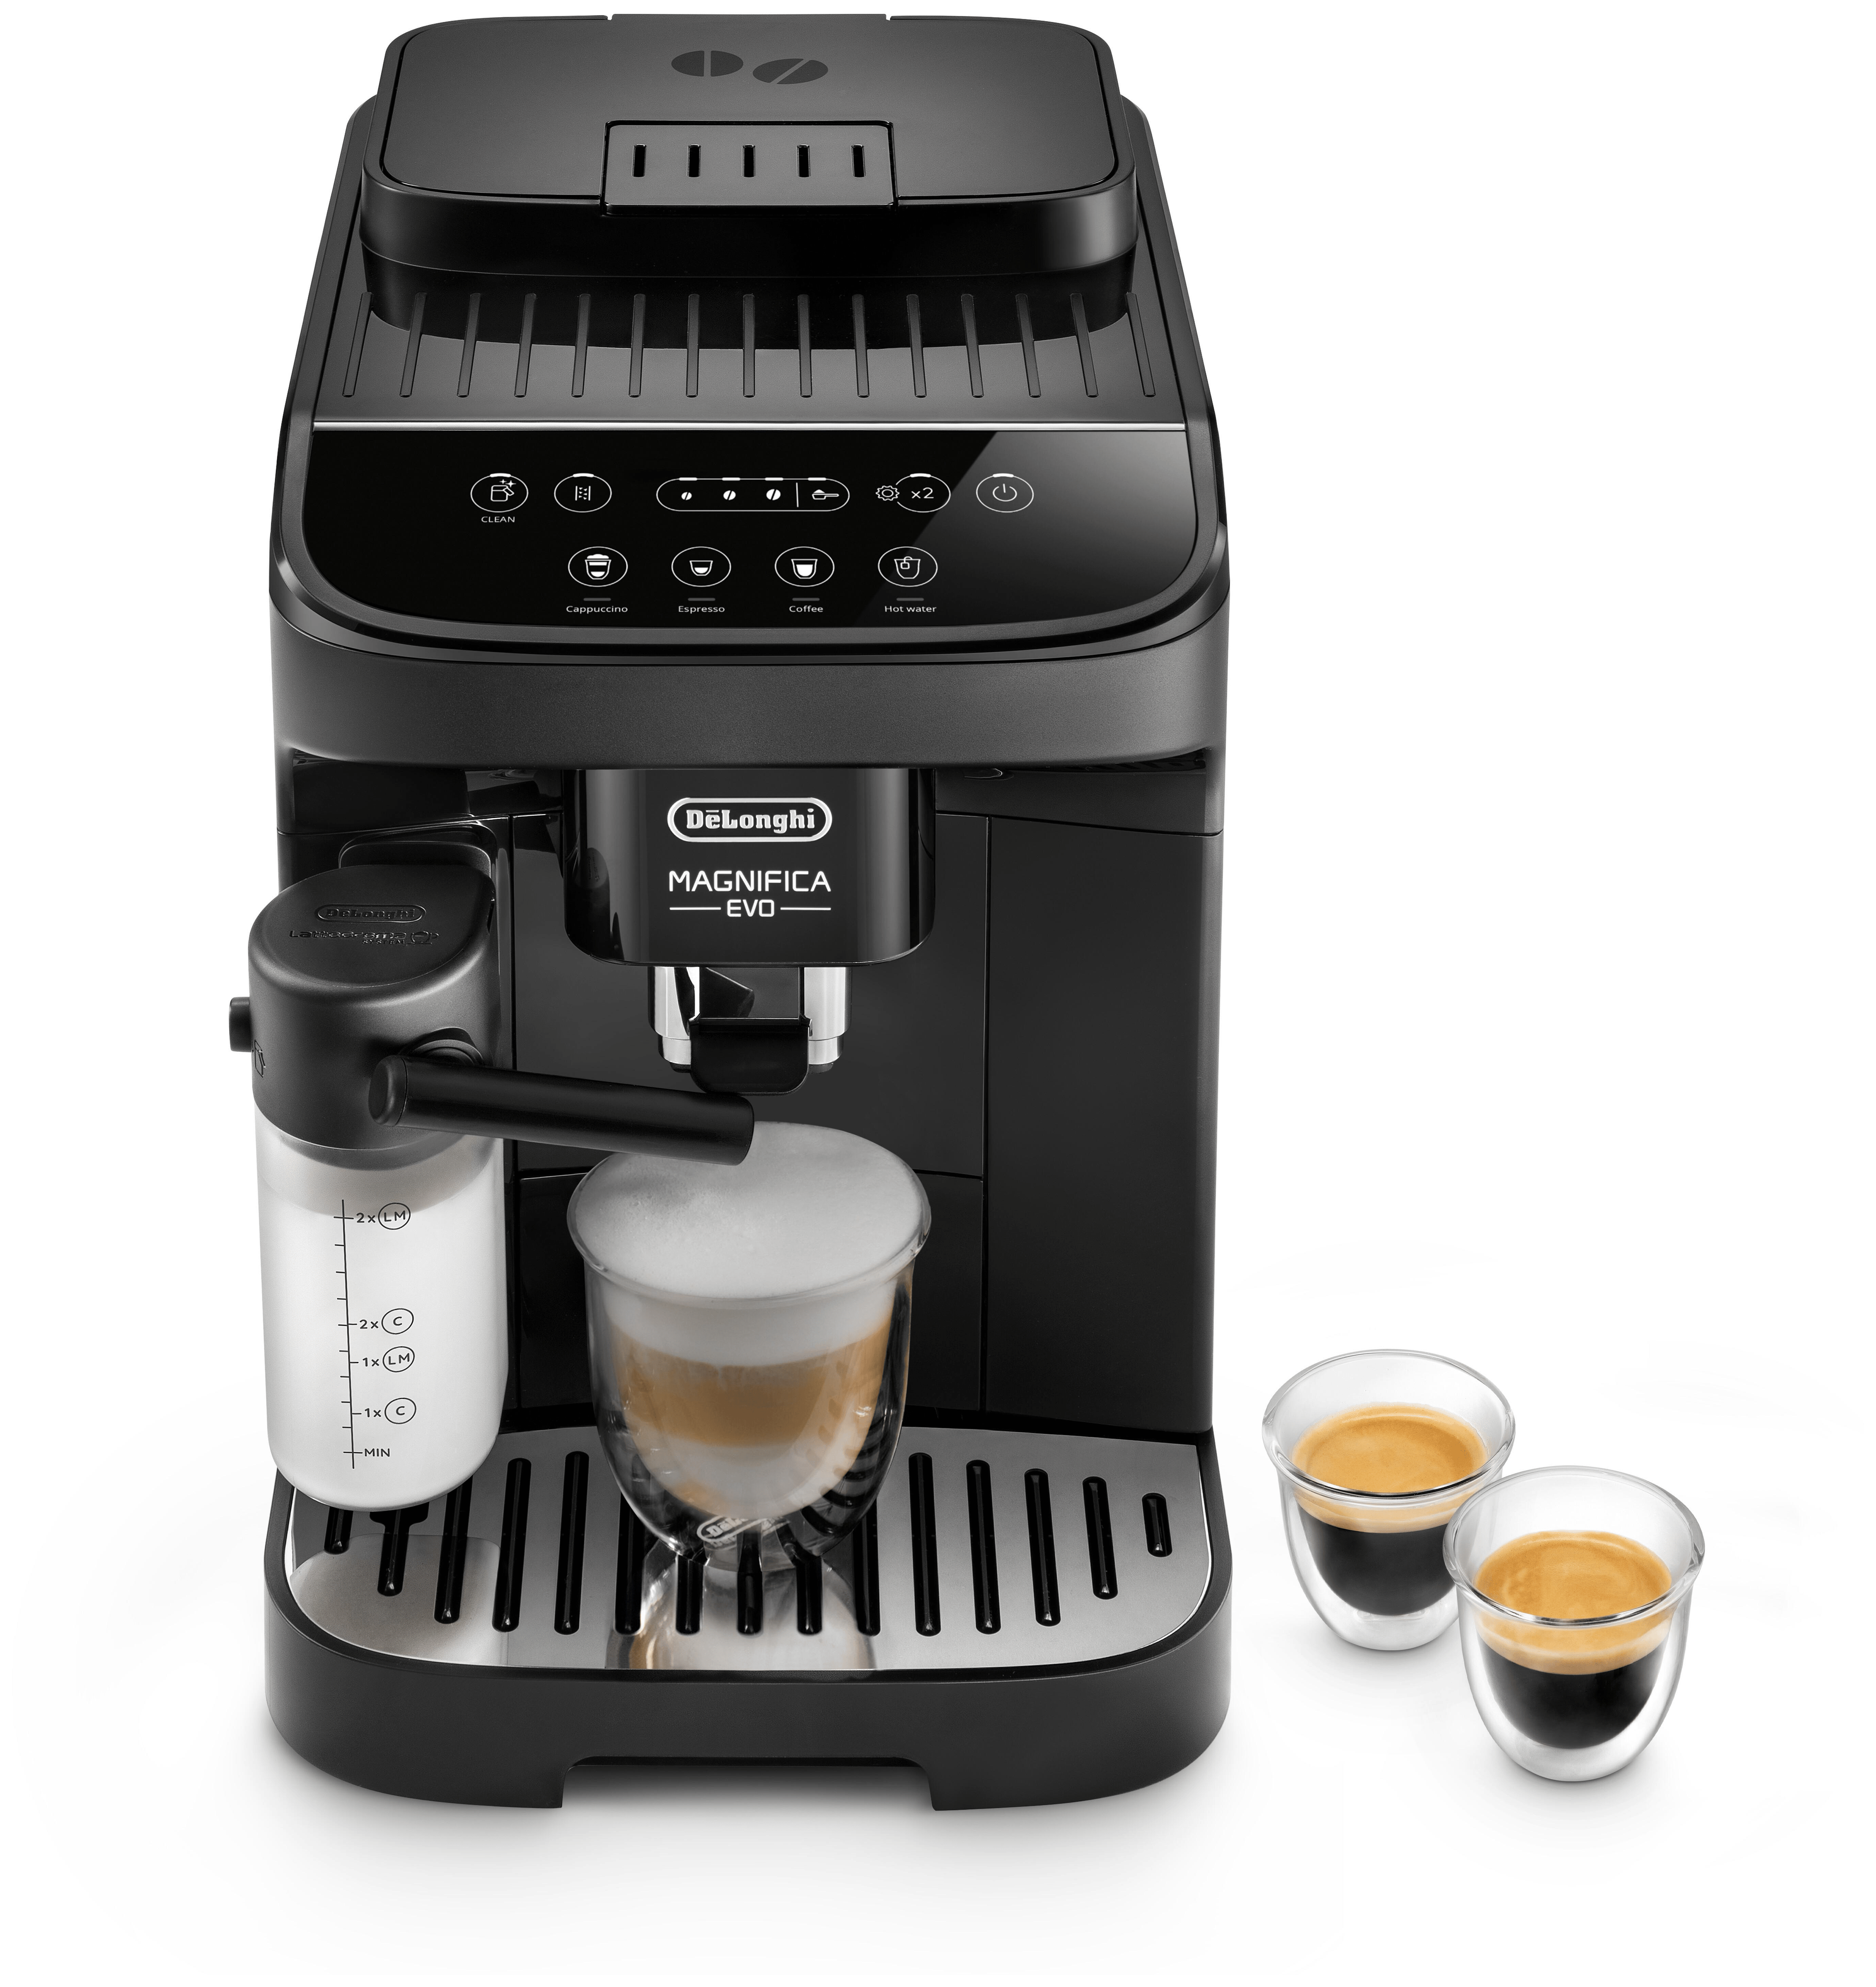 Style (schwarz) Kaffeemaschine + 2x Kaffekapseln GRATIS